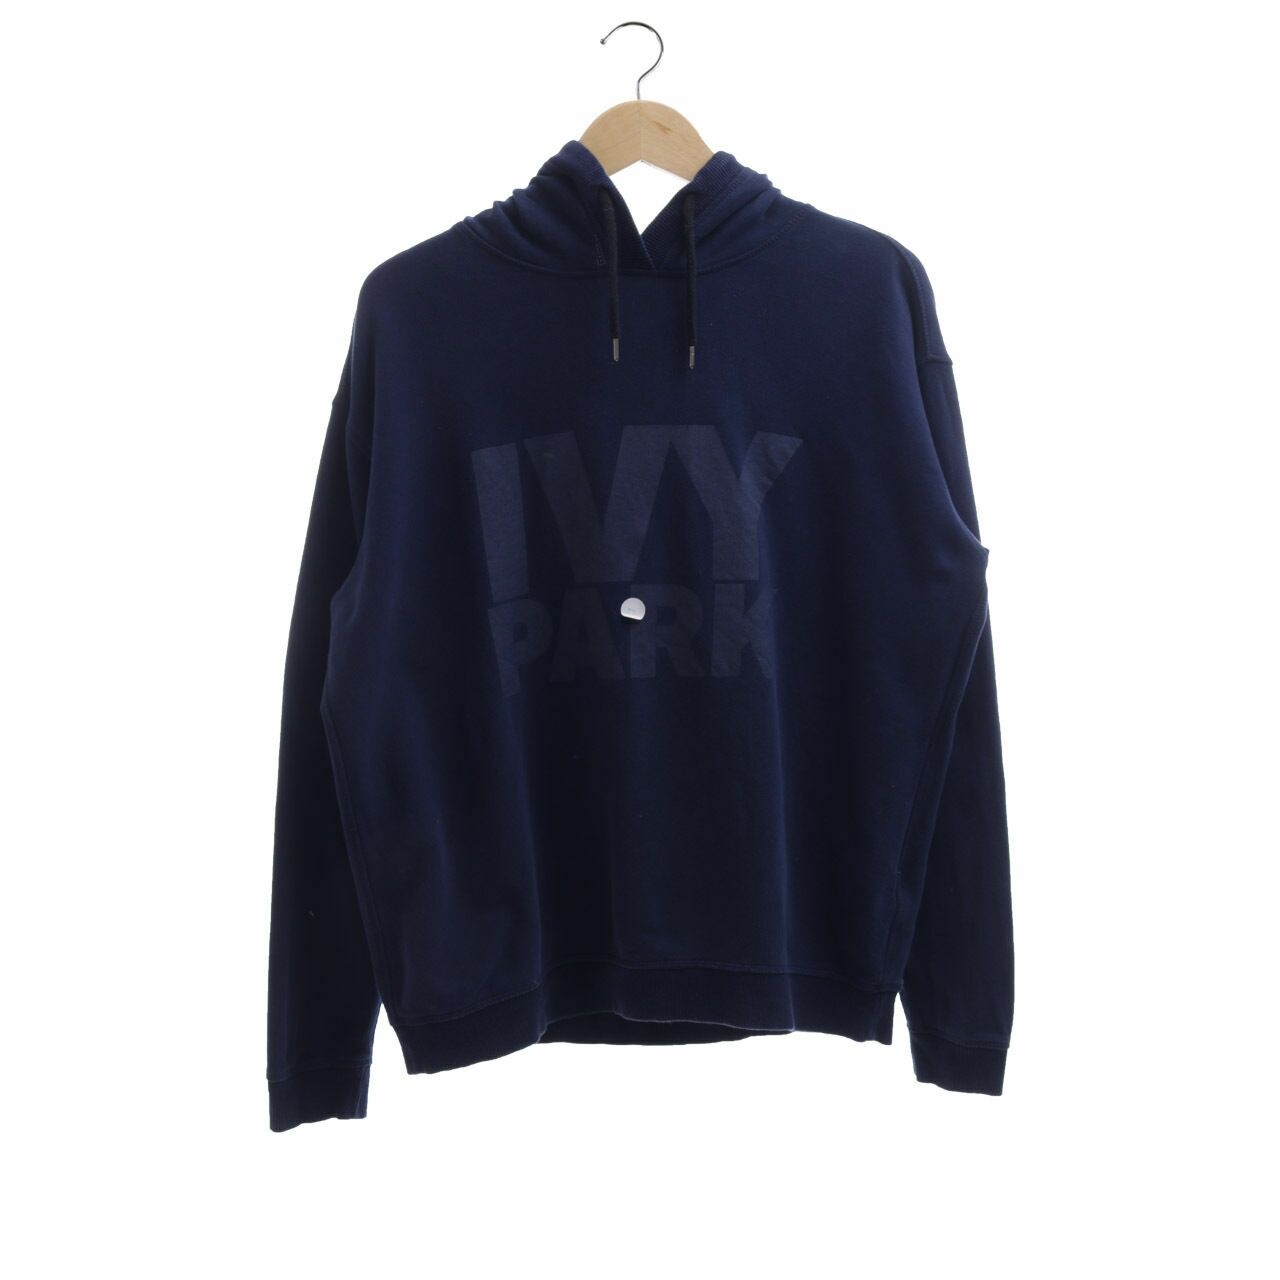 Ivy Park Navy Hoodie Sweater